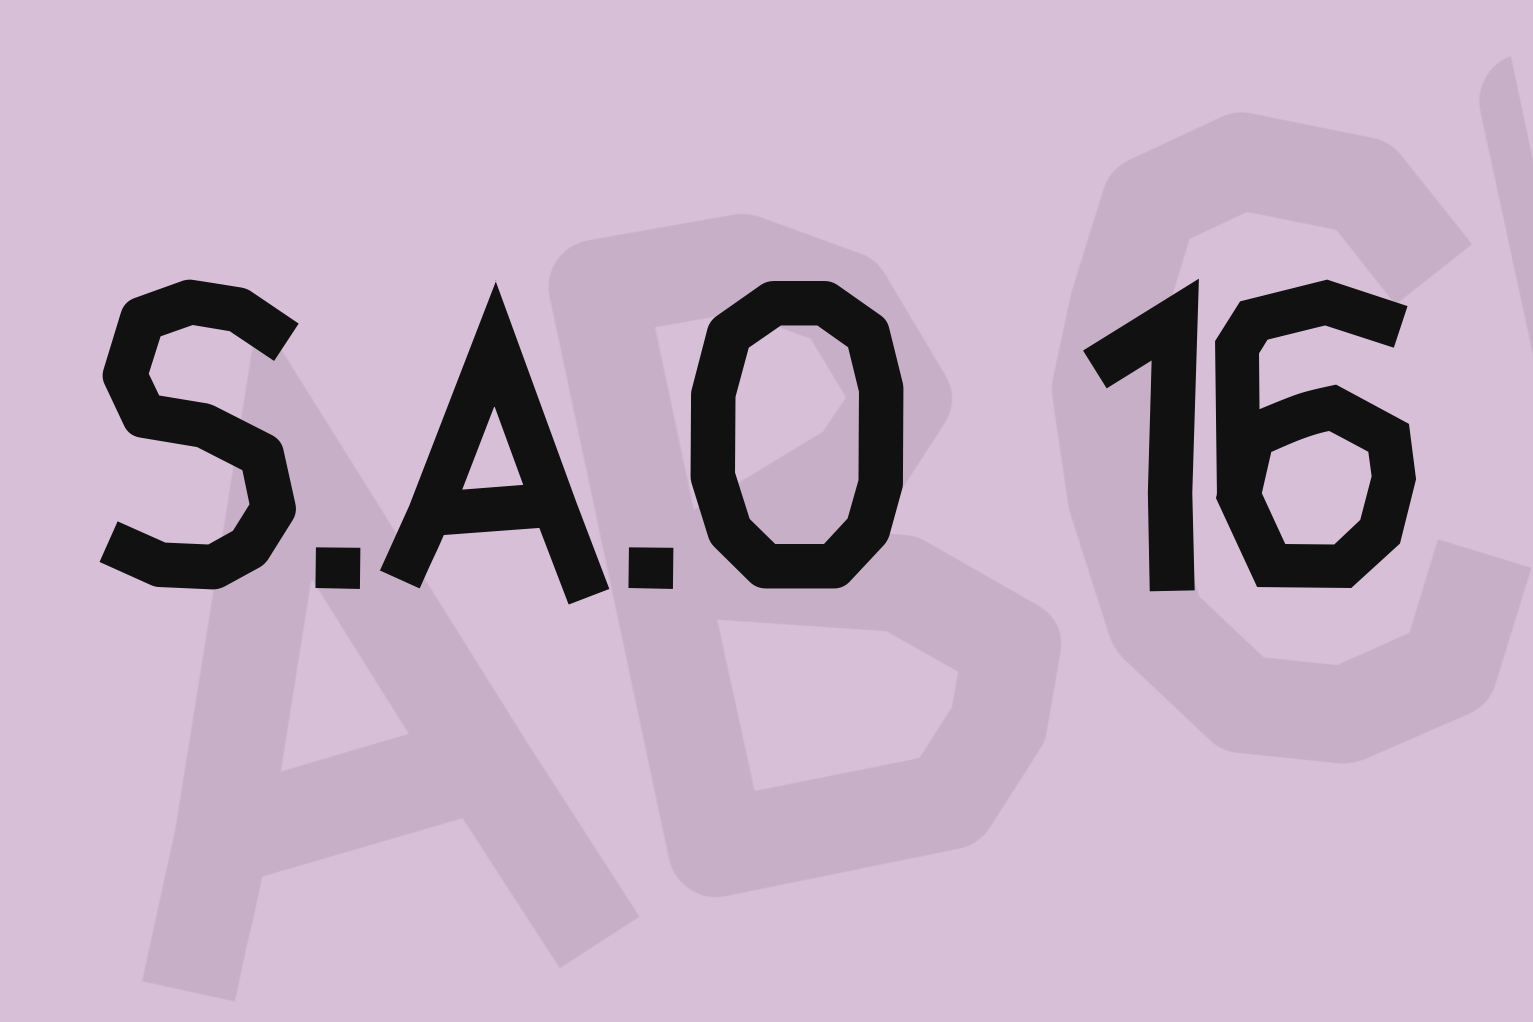 S.A.O 16